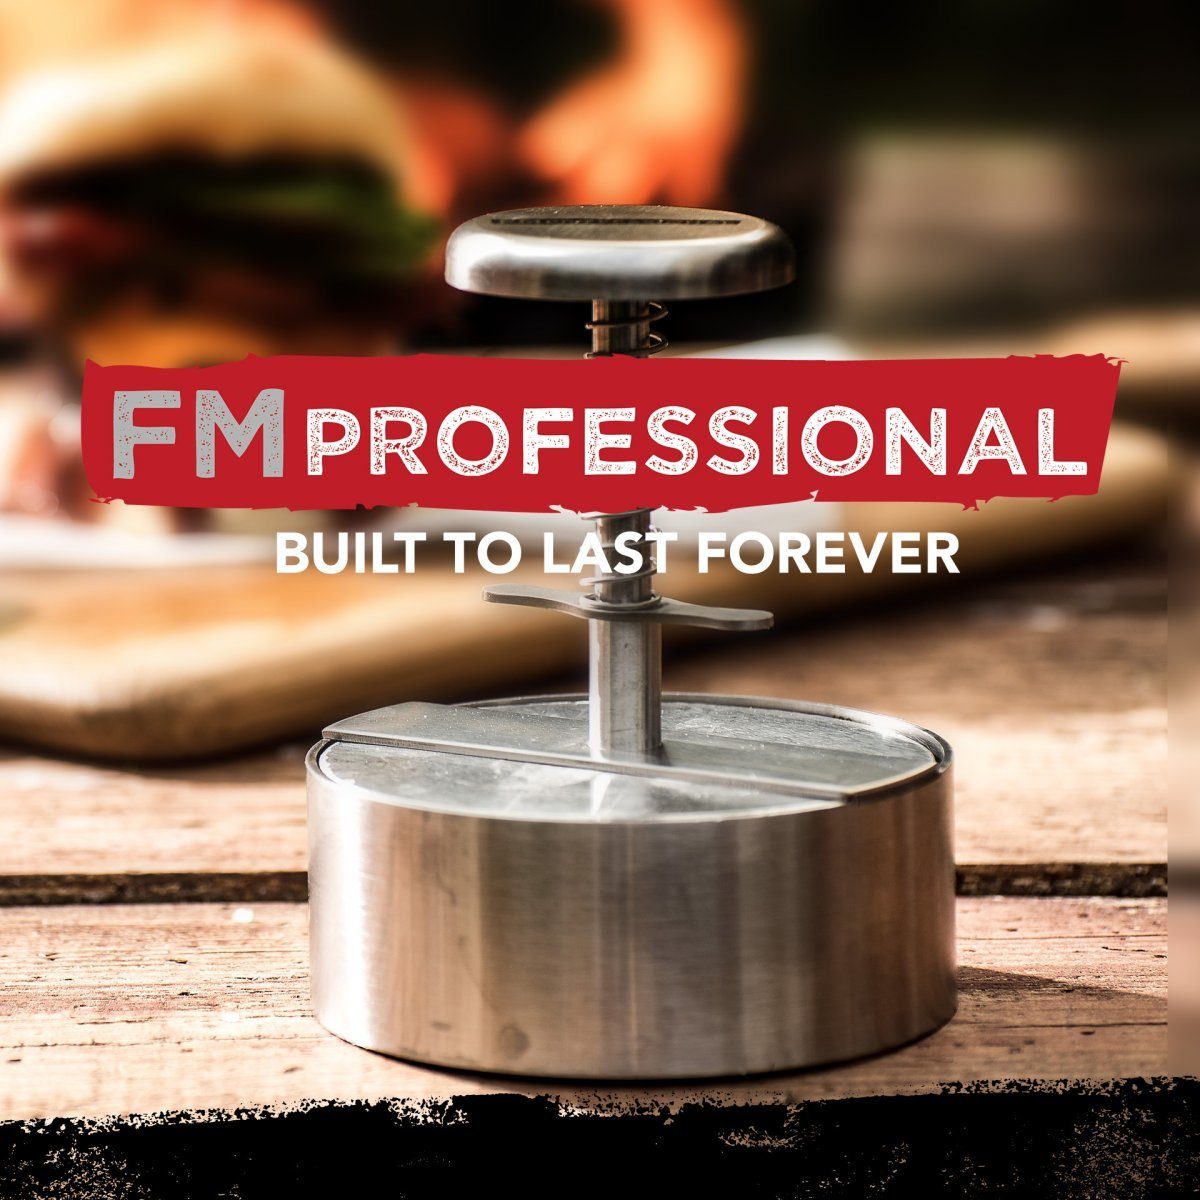 FMprofessional Burgerpresse